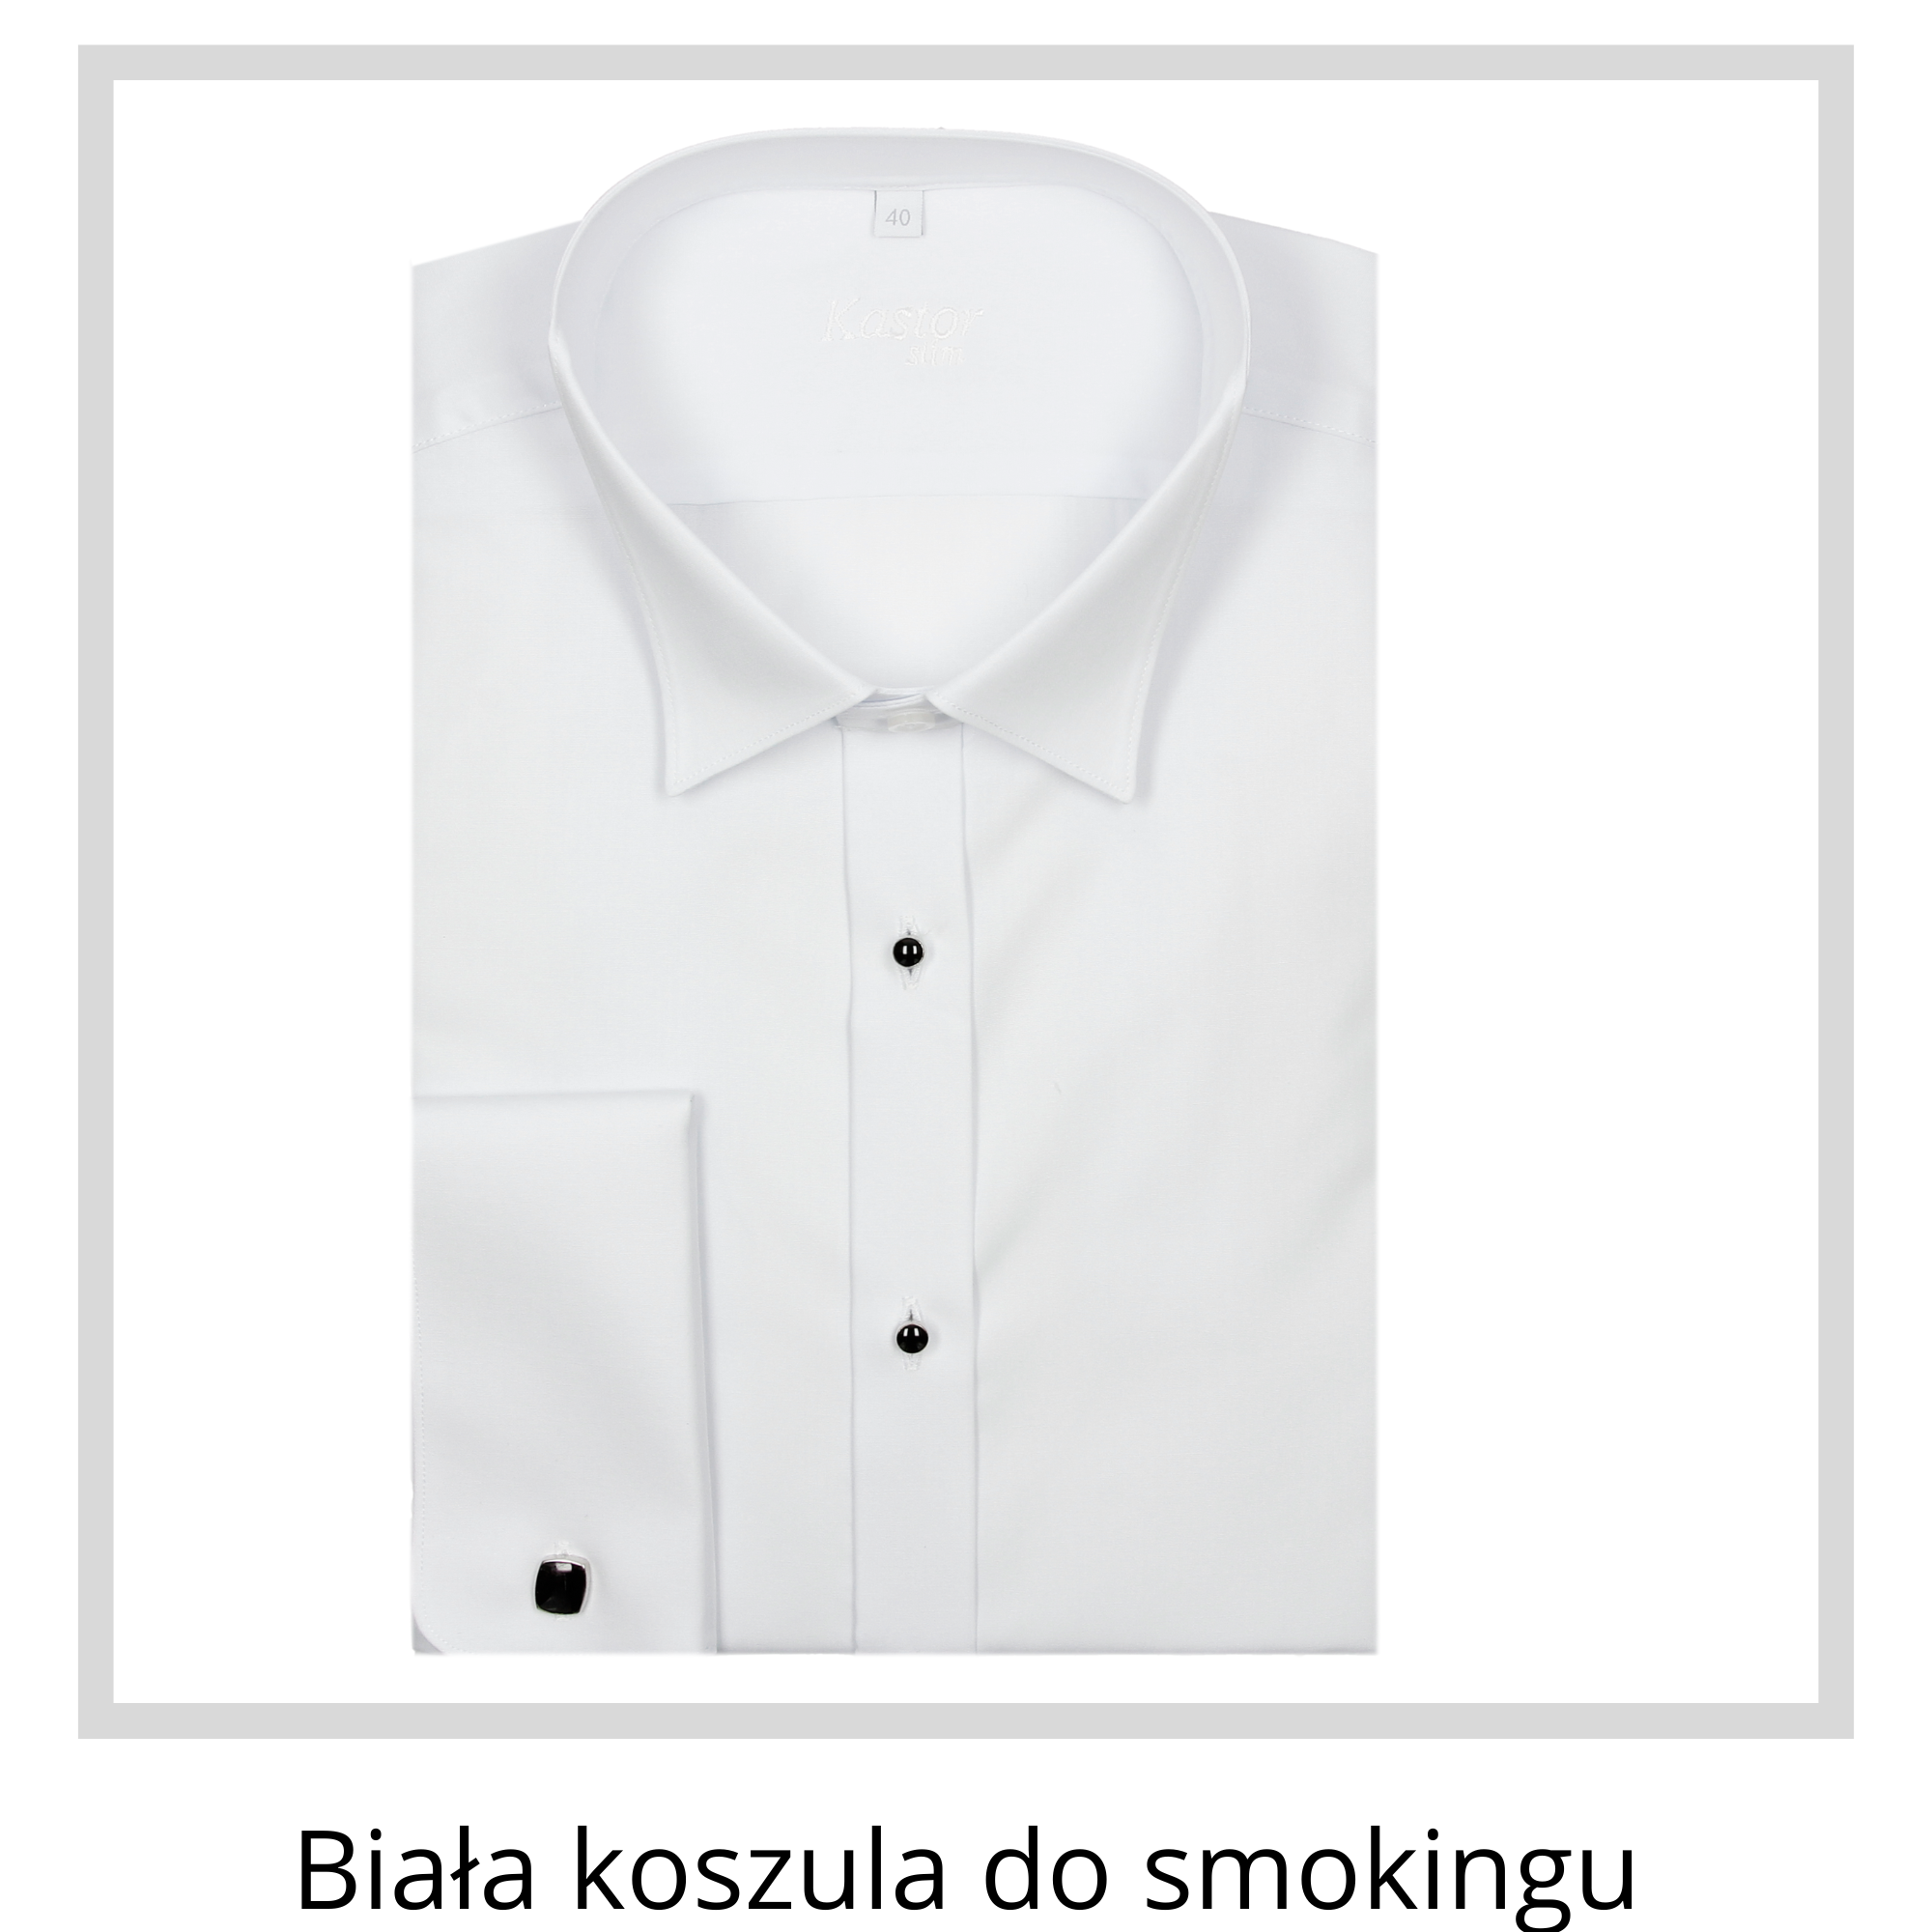 Biała koszula do smokingu